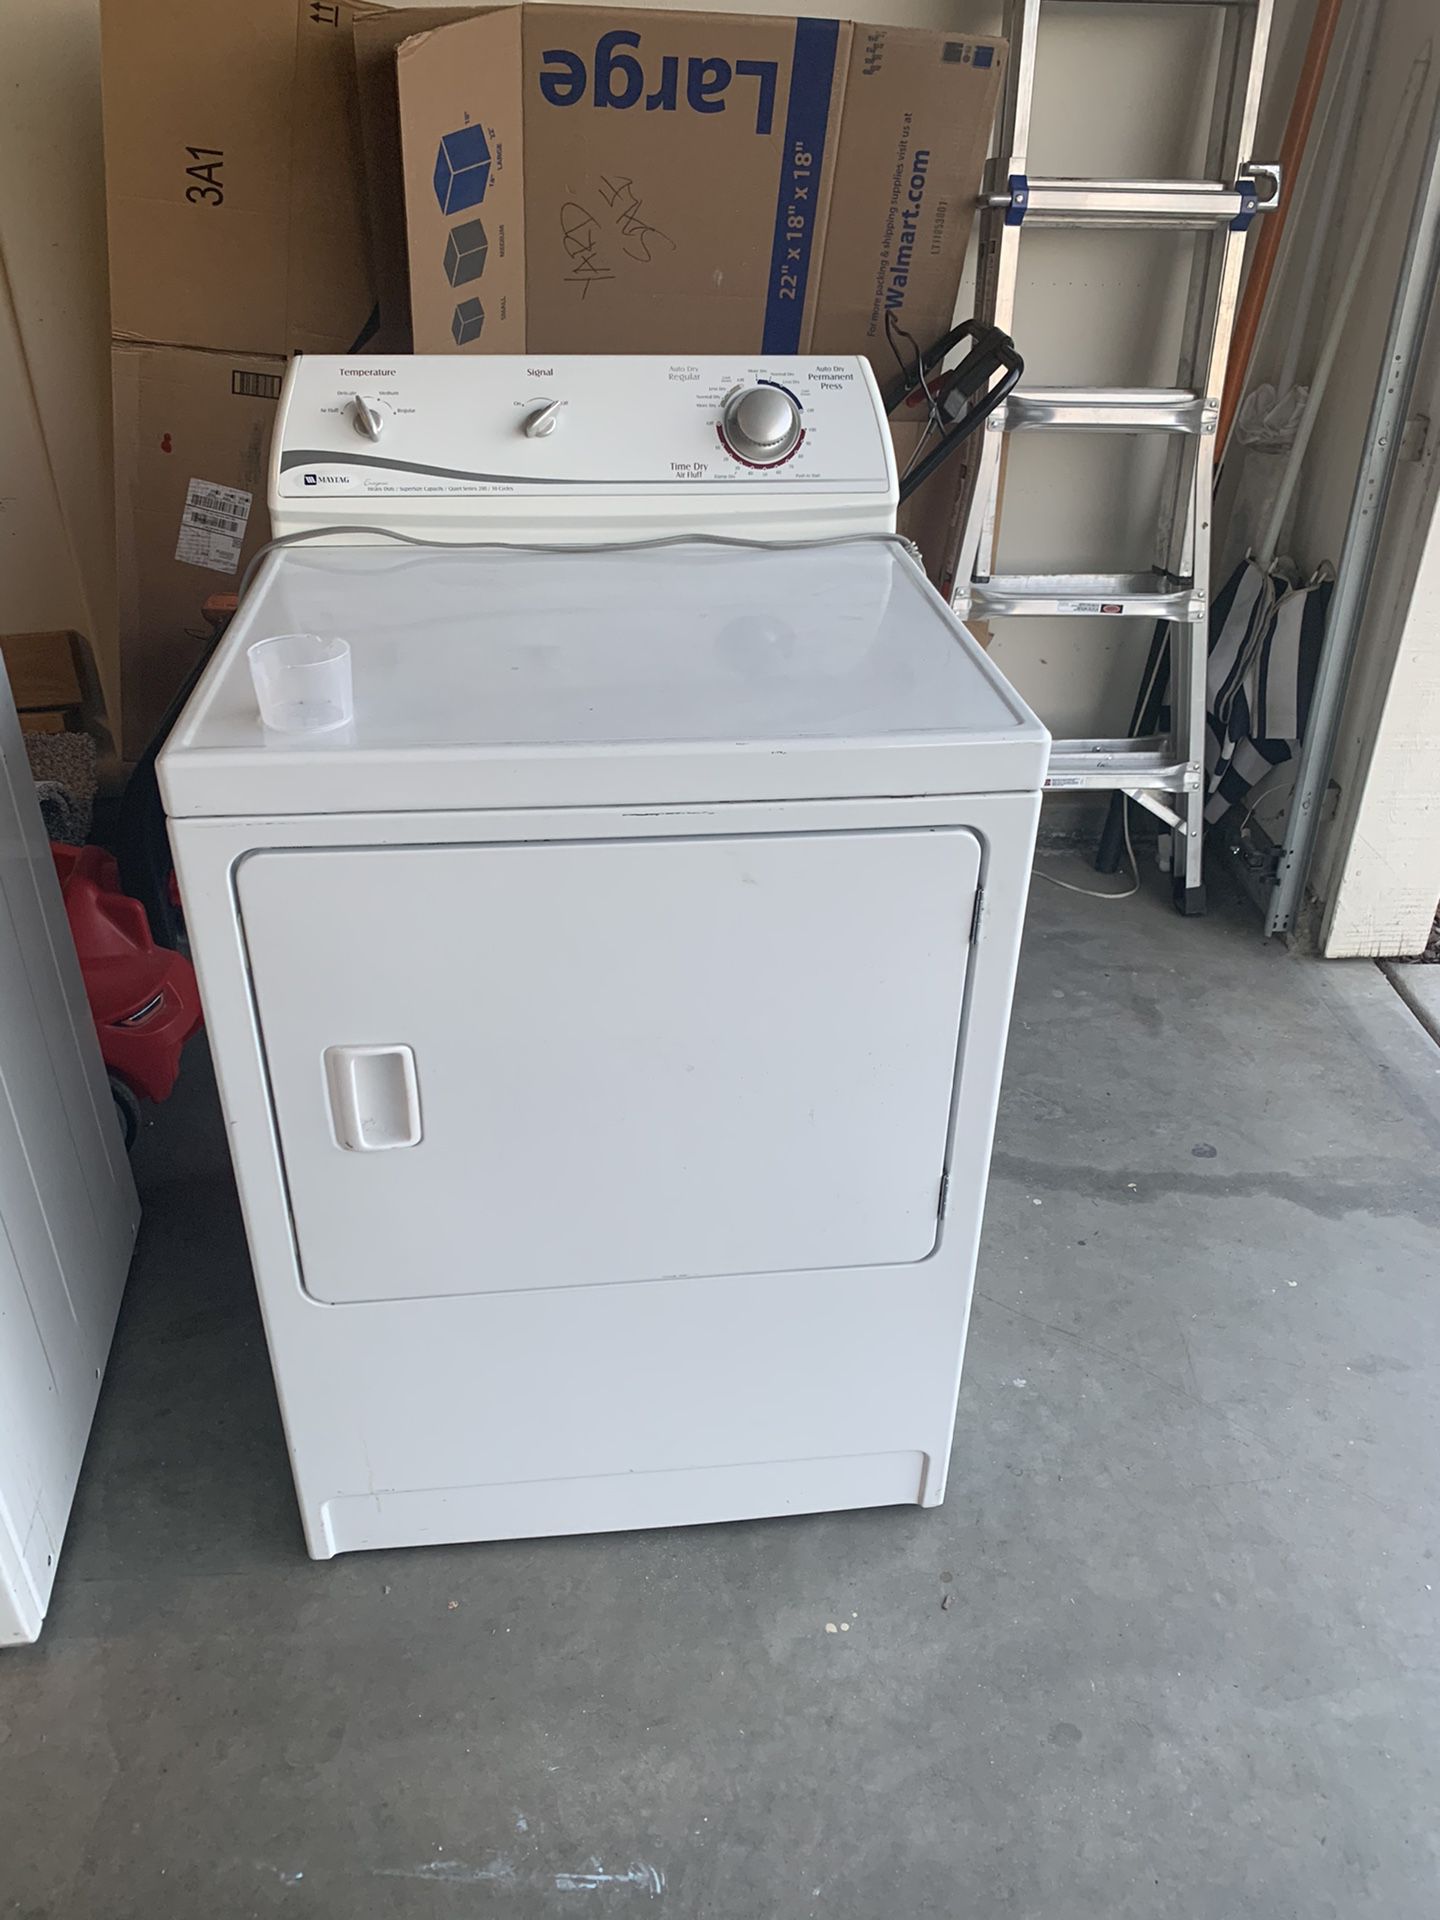 Maytag Gas Dryer